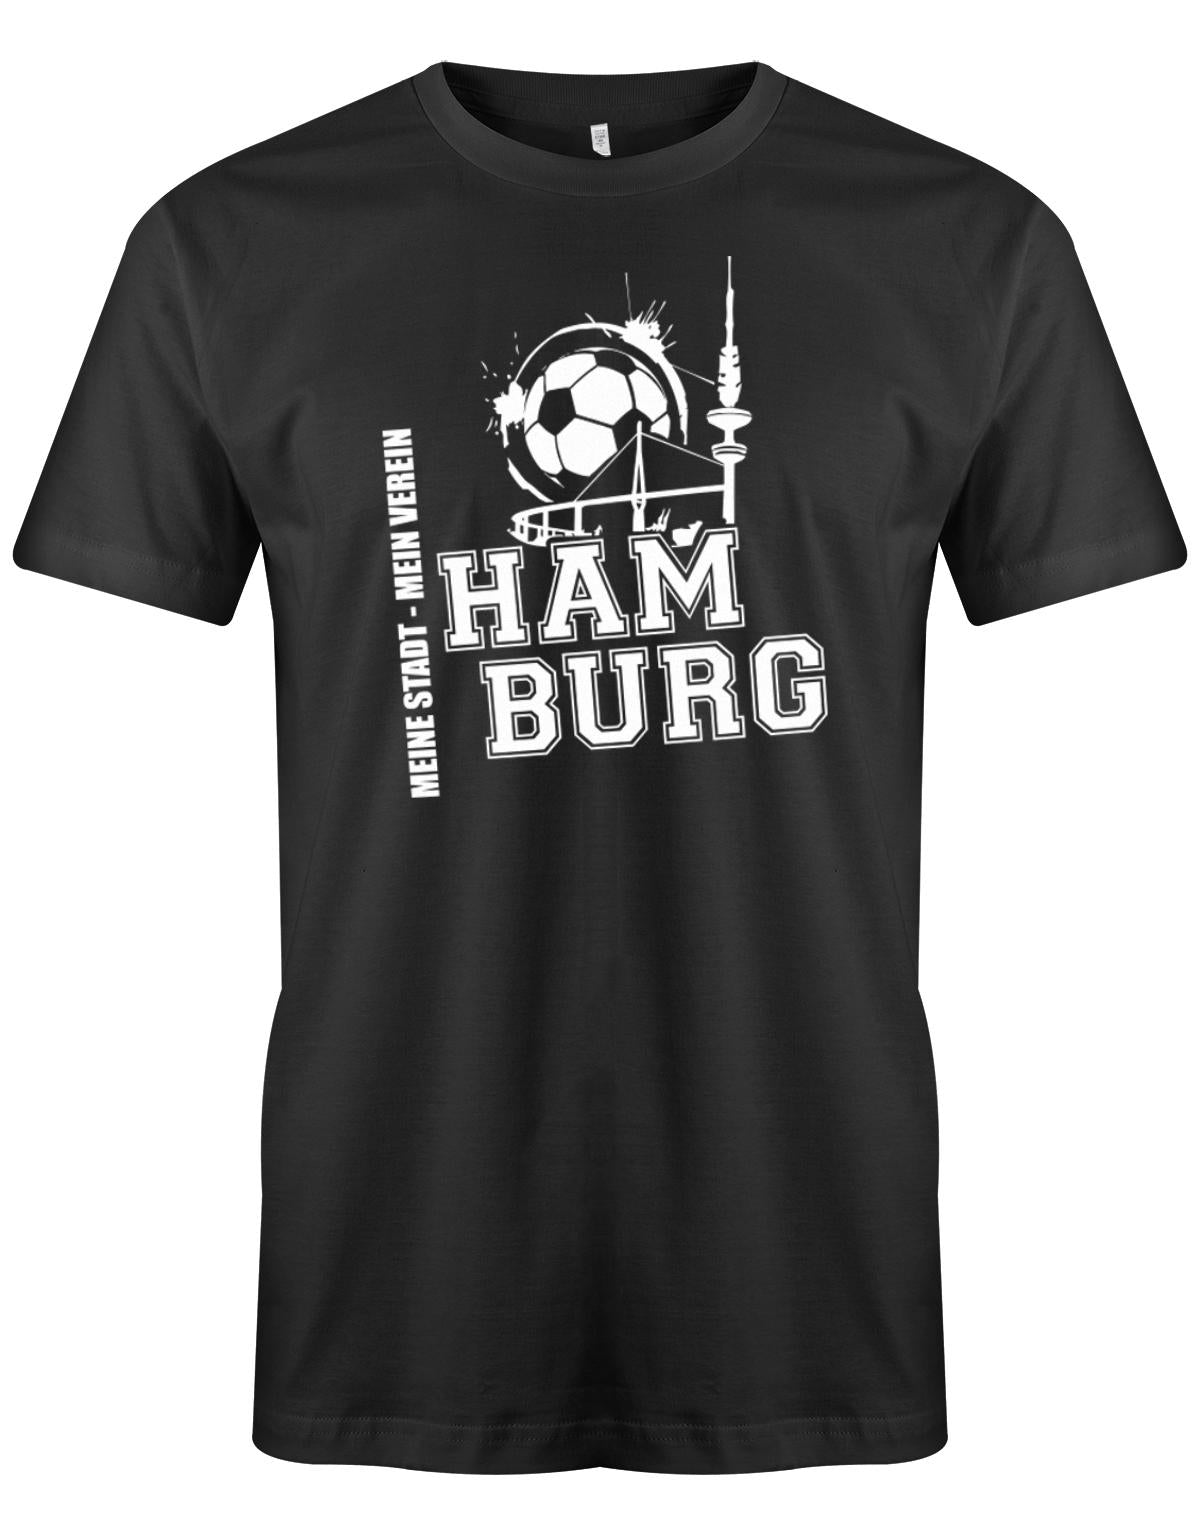 Hamburg-Meine-Stadt-Mein-verein-Herren-Shirt-SChwwarz